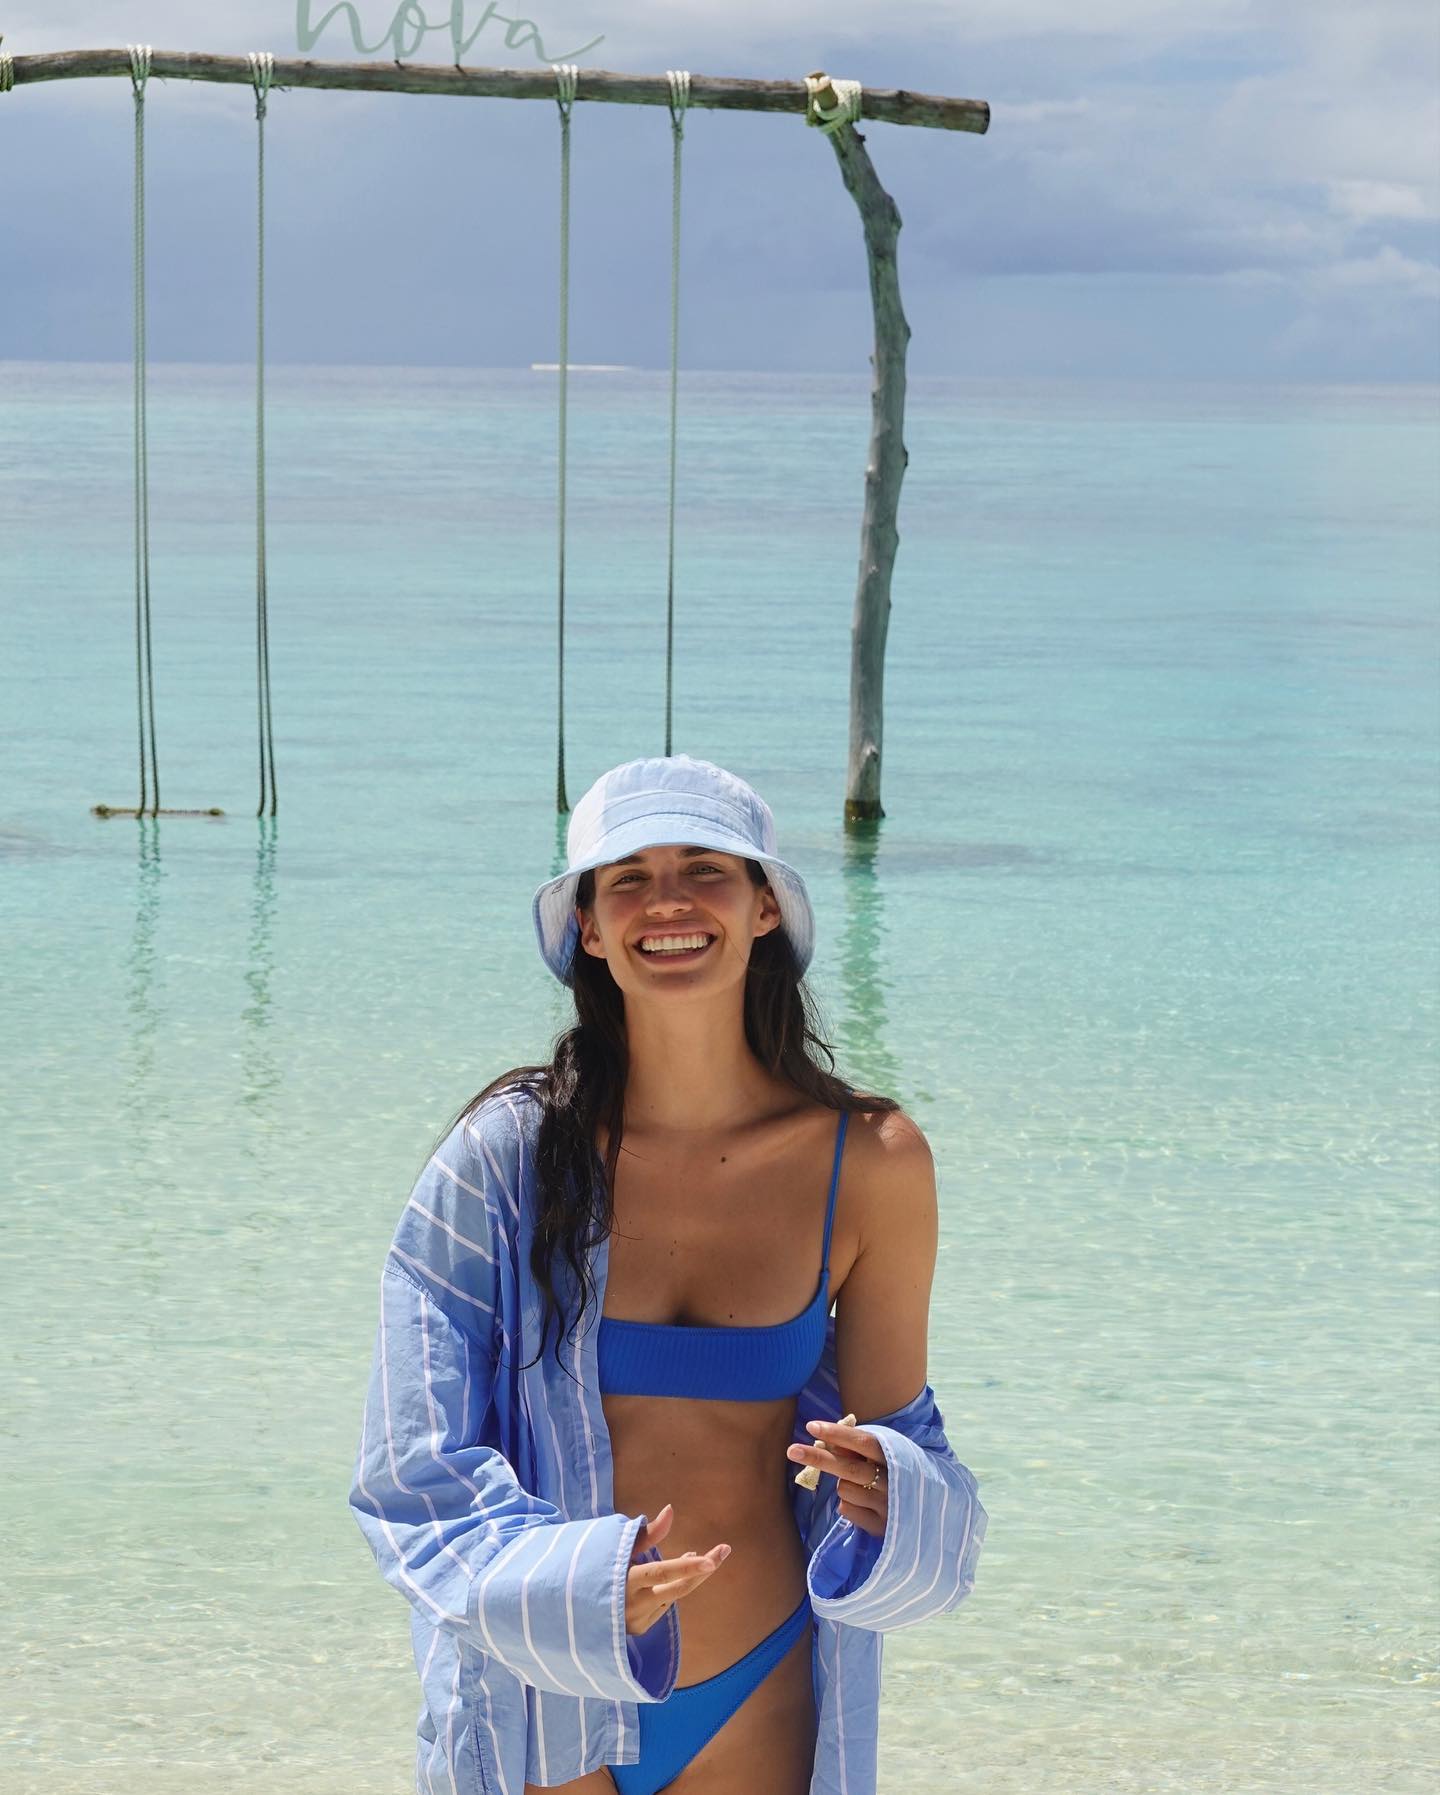 Photos n°14 : Sara Sampaio’s Bikini in Bora Bora!